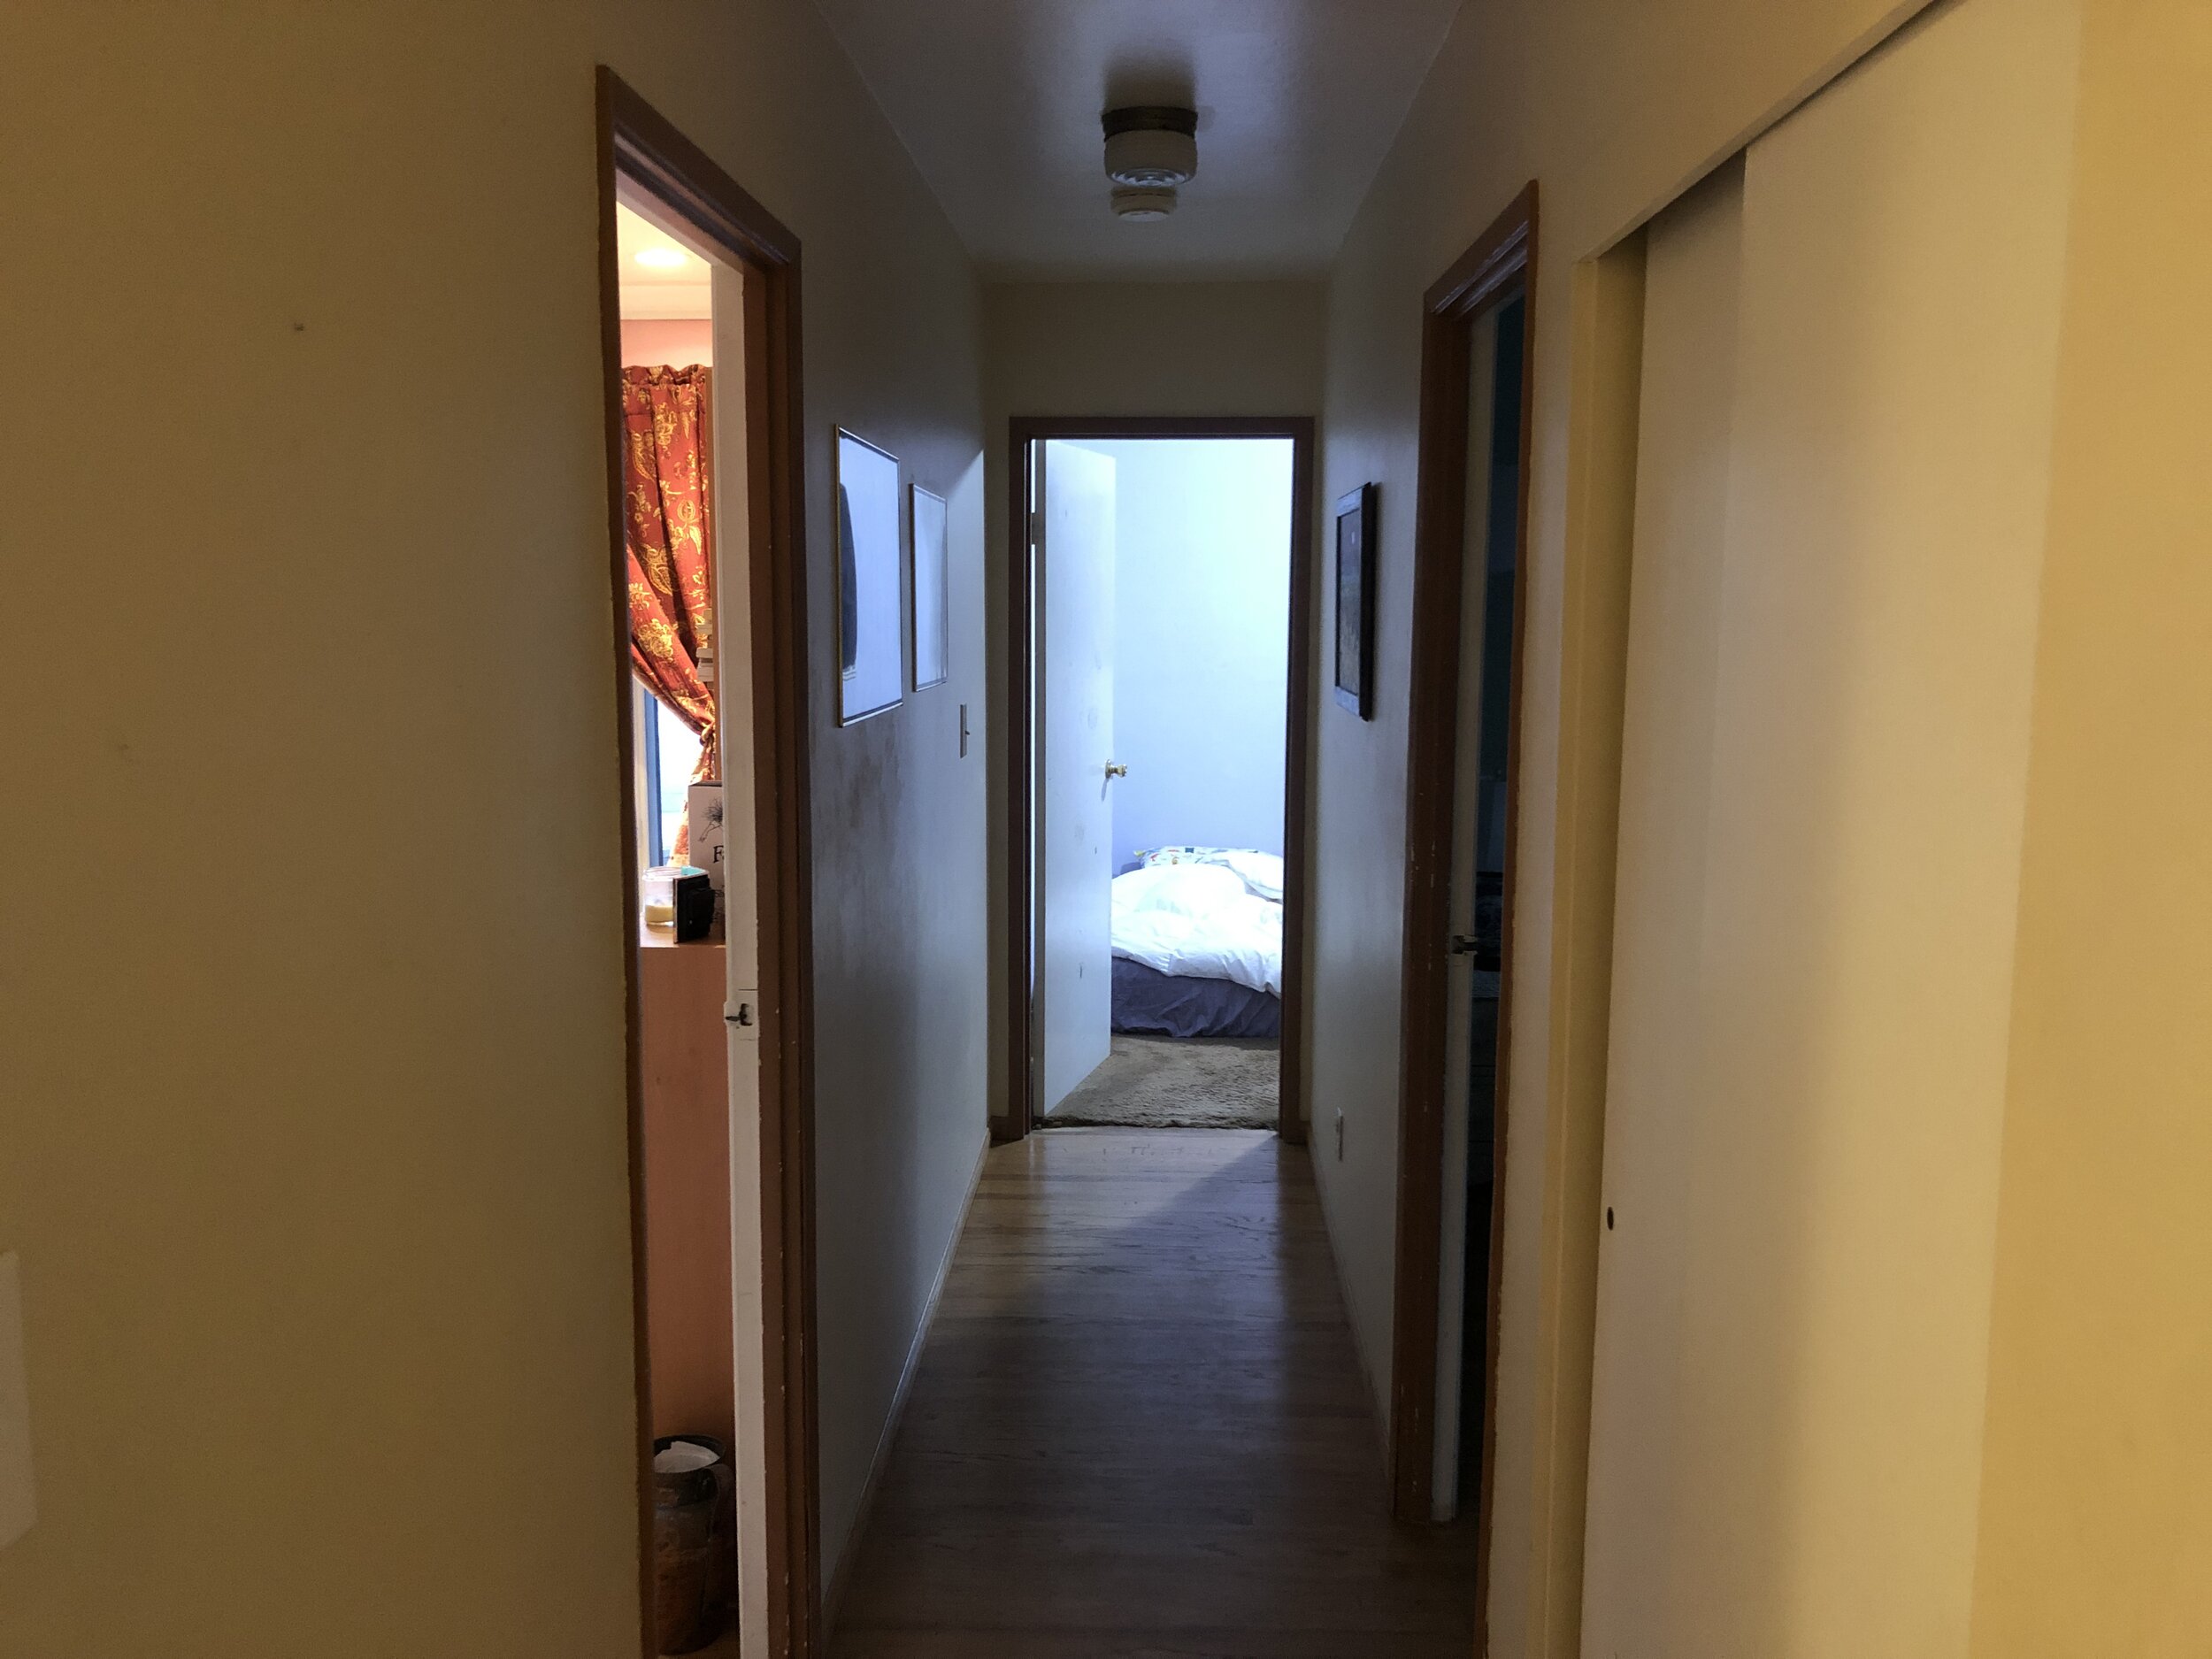 Bedroom hallway